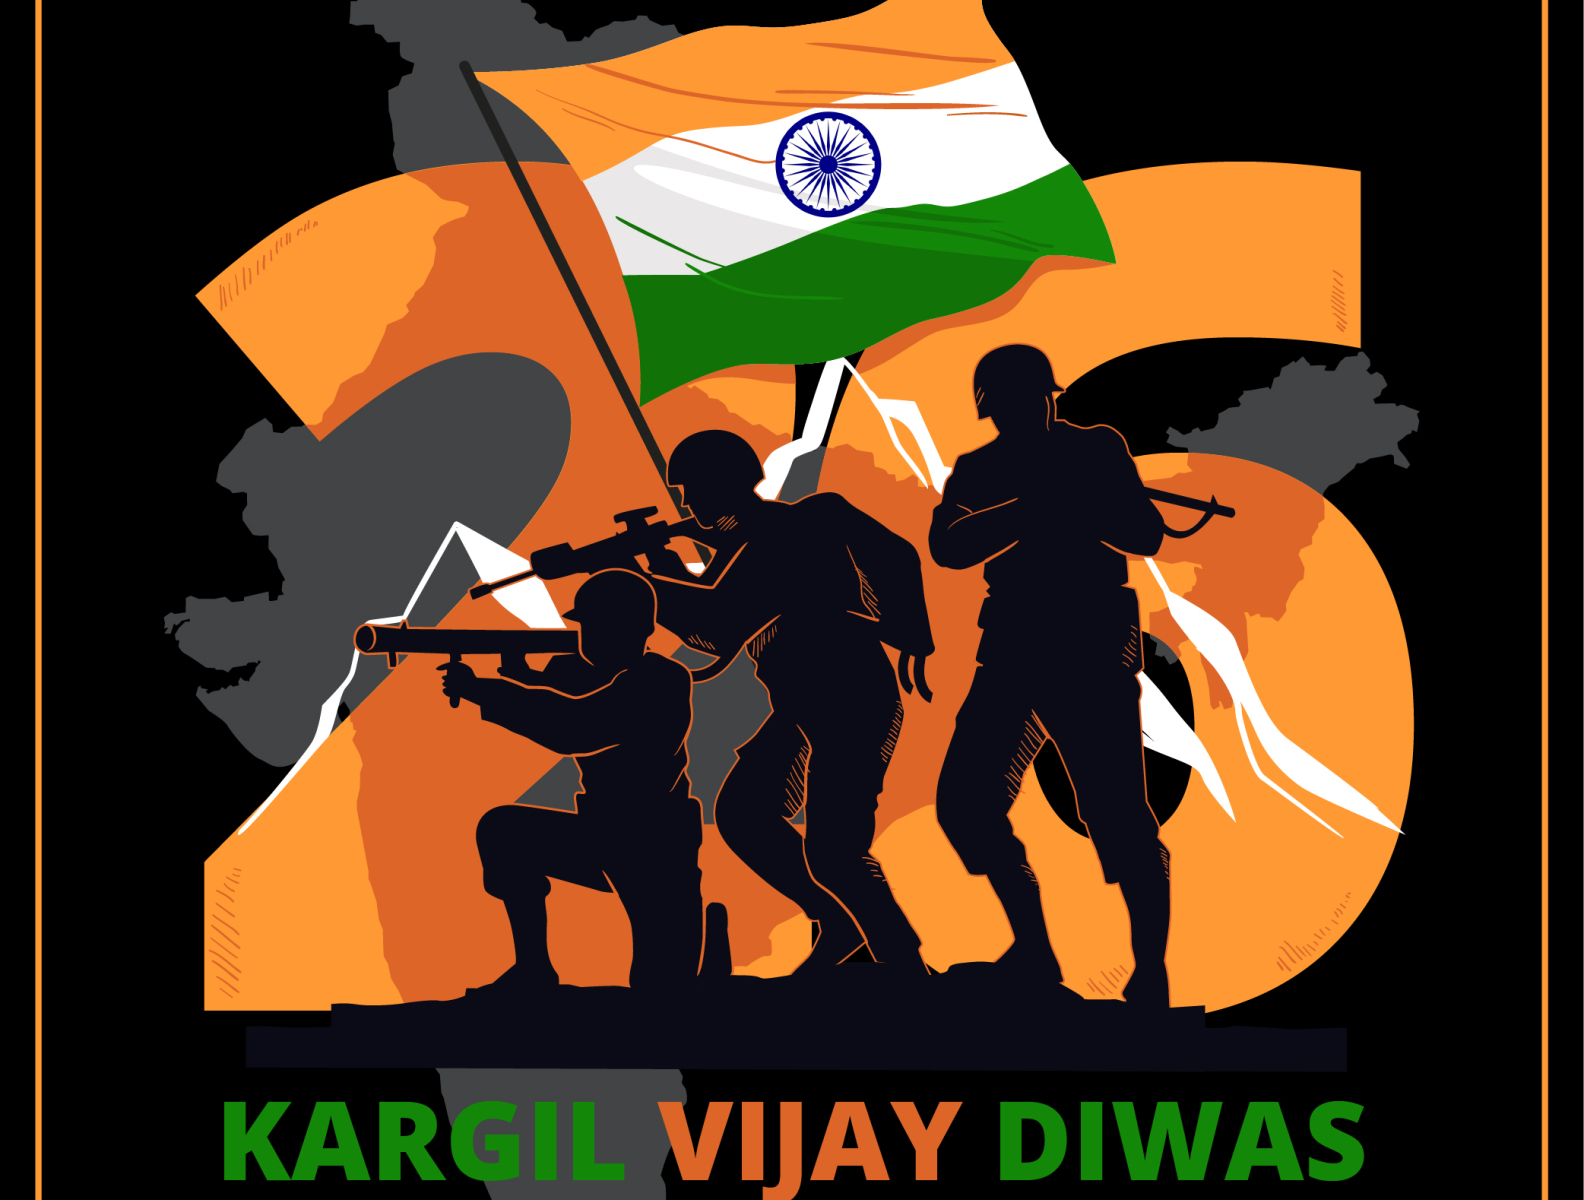 Kargil vijay diwas 26th july Royalty Free Vector Image